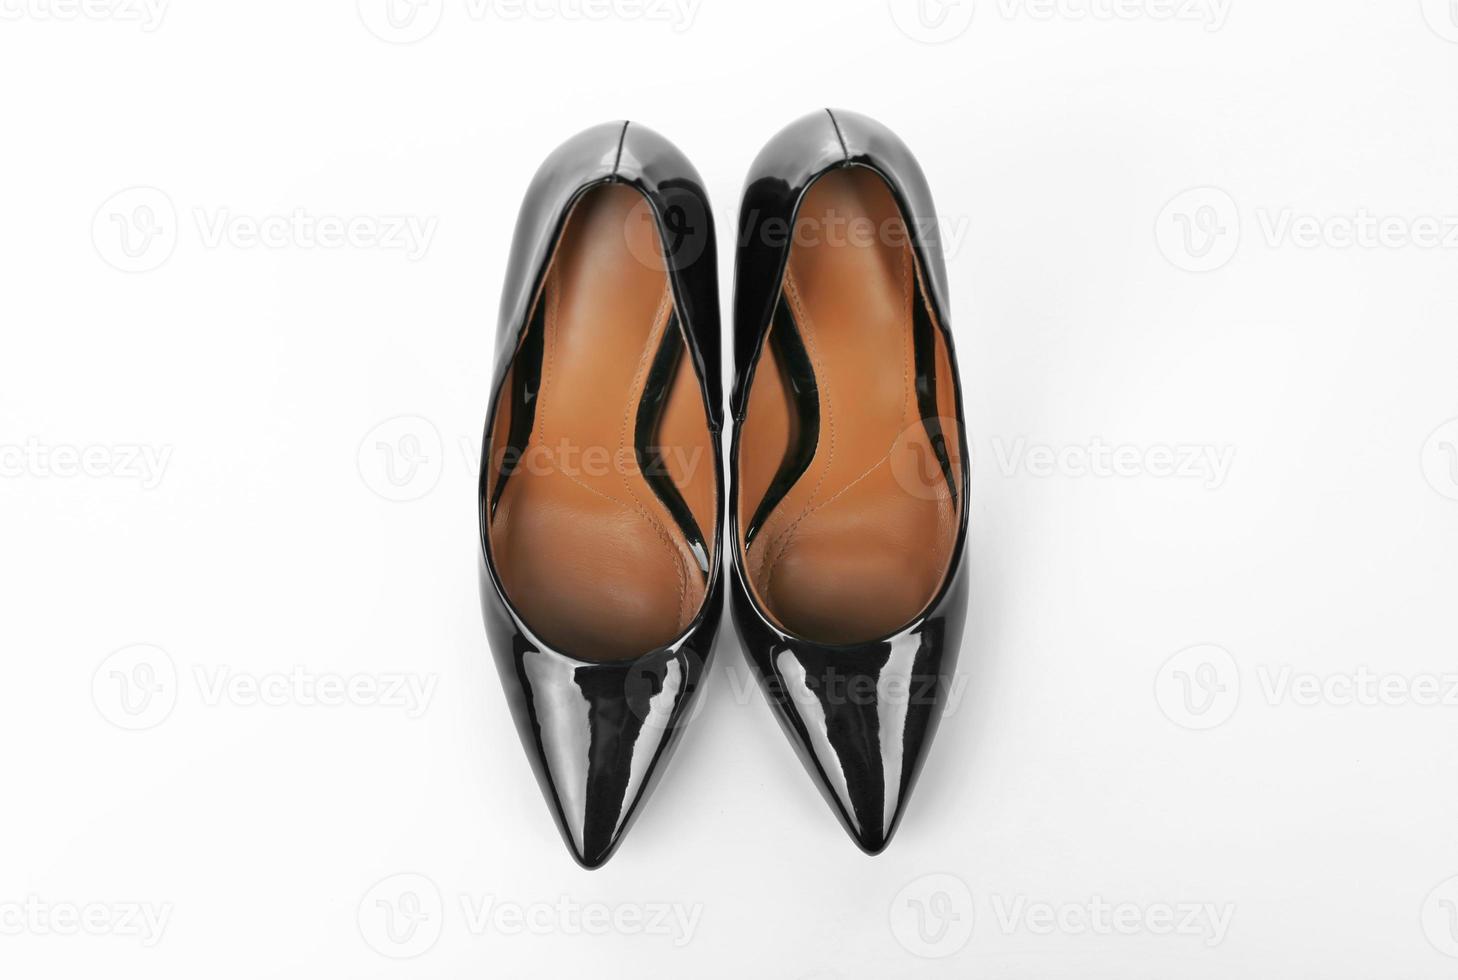 chaussures femmes élégantes sur fond blanc photo